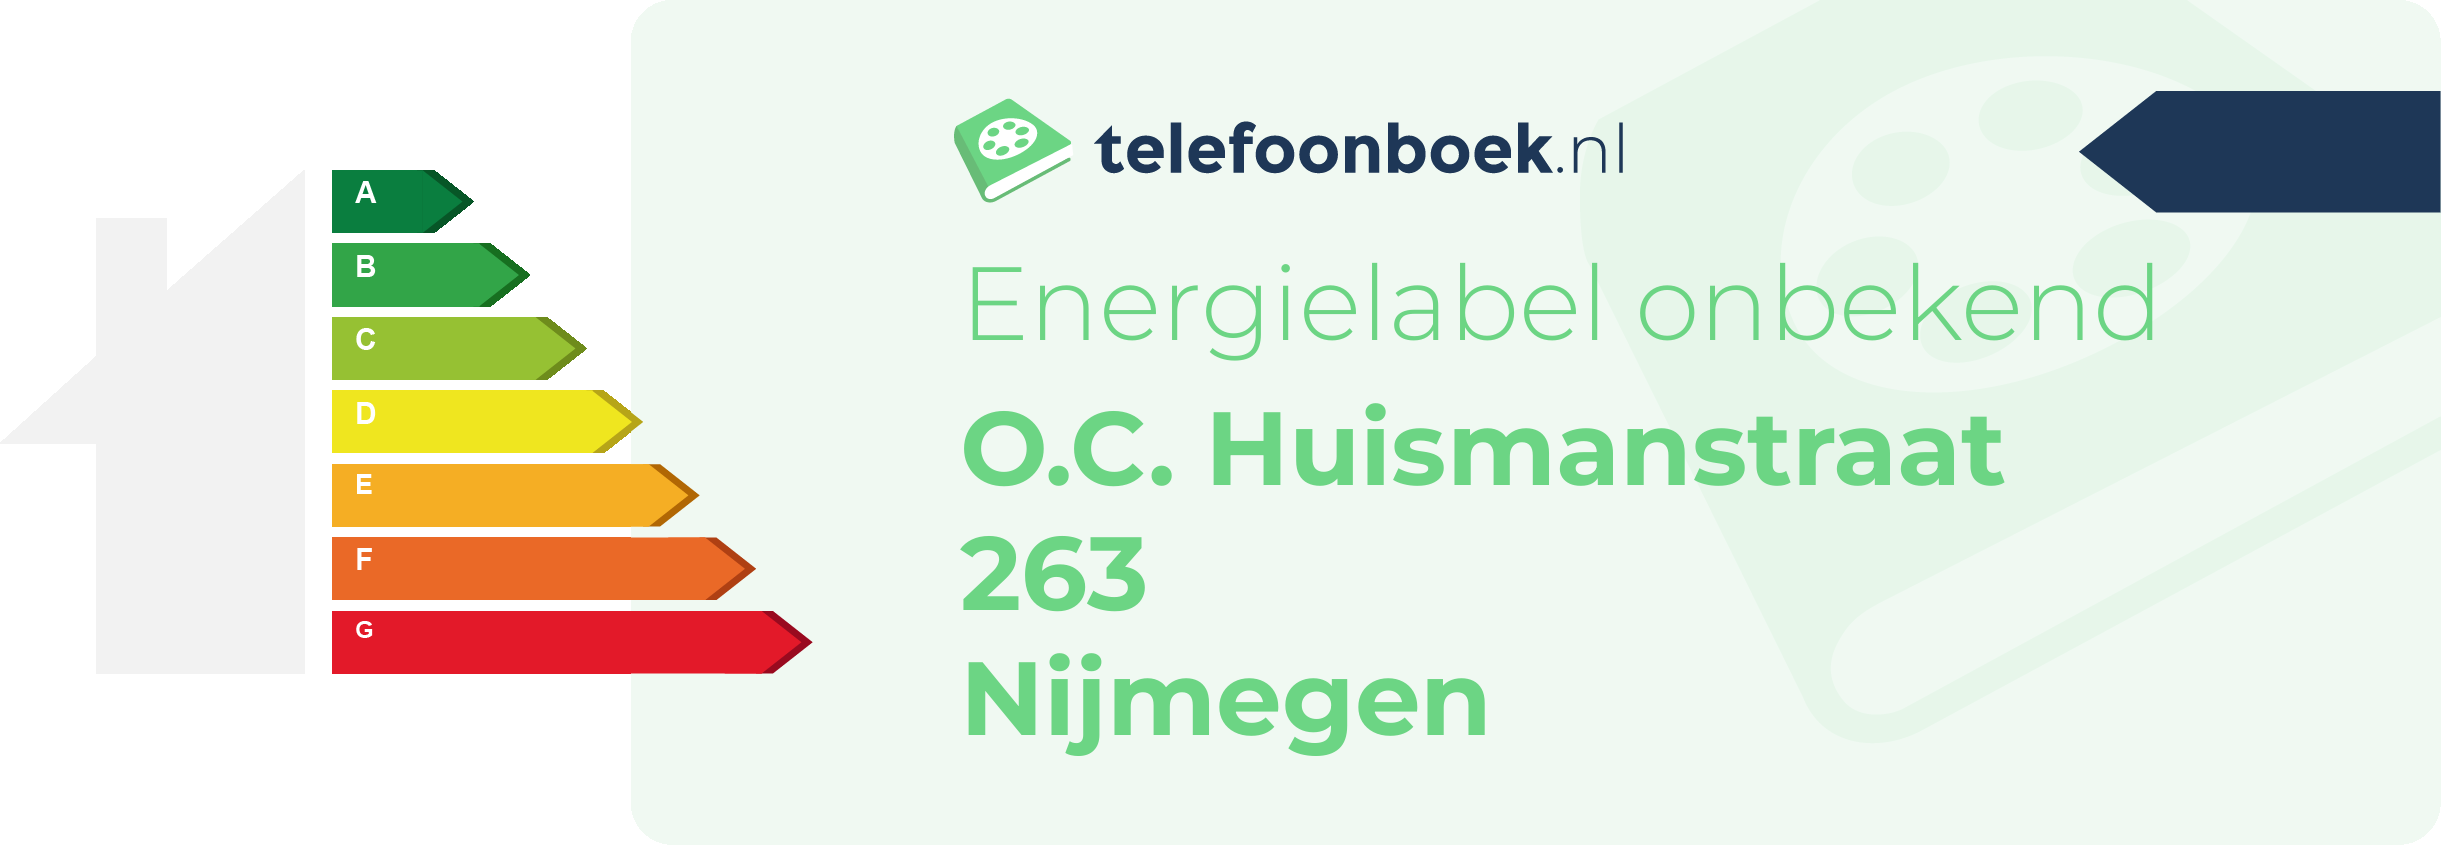 Energielabel O.C. Huismanstraat 263 Nijmegen